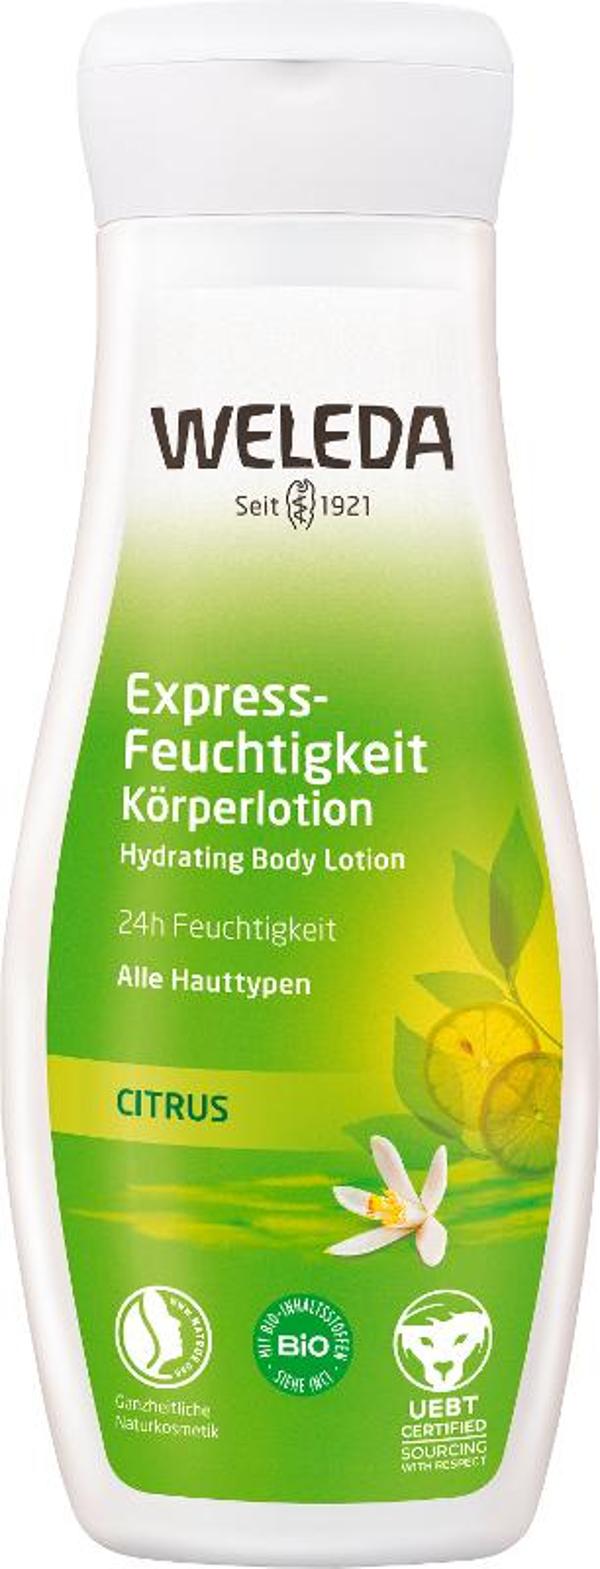 Produktfoto zu Citrus Express-Feuchtigkeit Körperlotion - 200ml